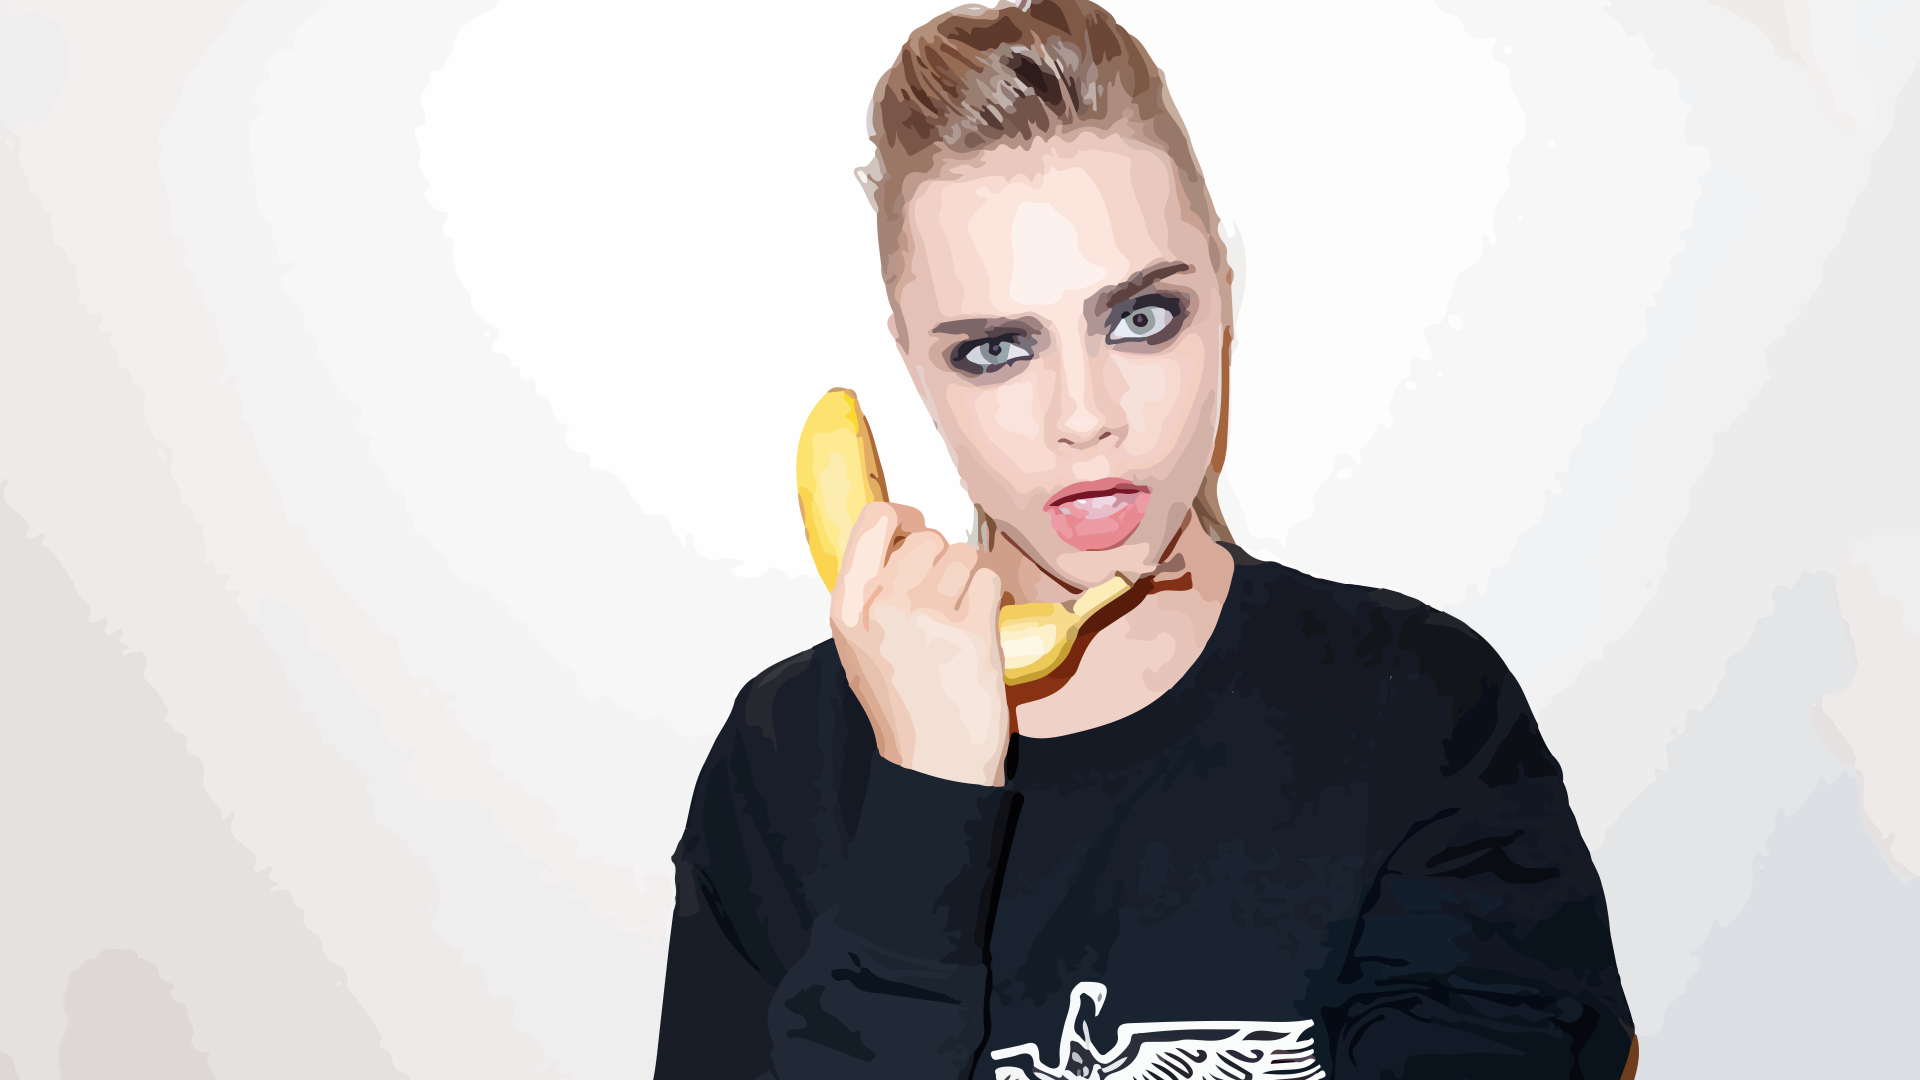 Girl with banana, Cara Delevingne